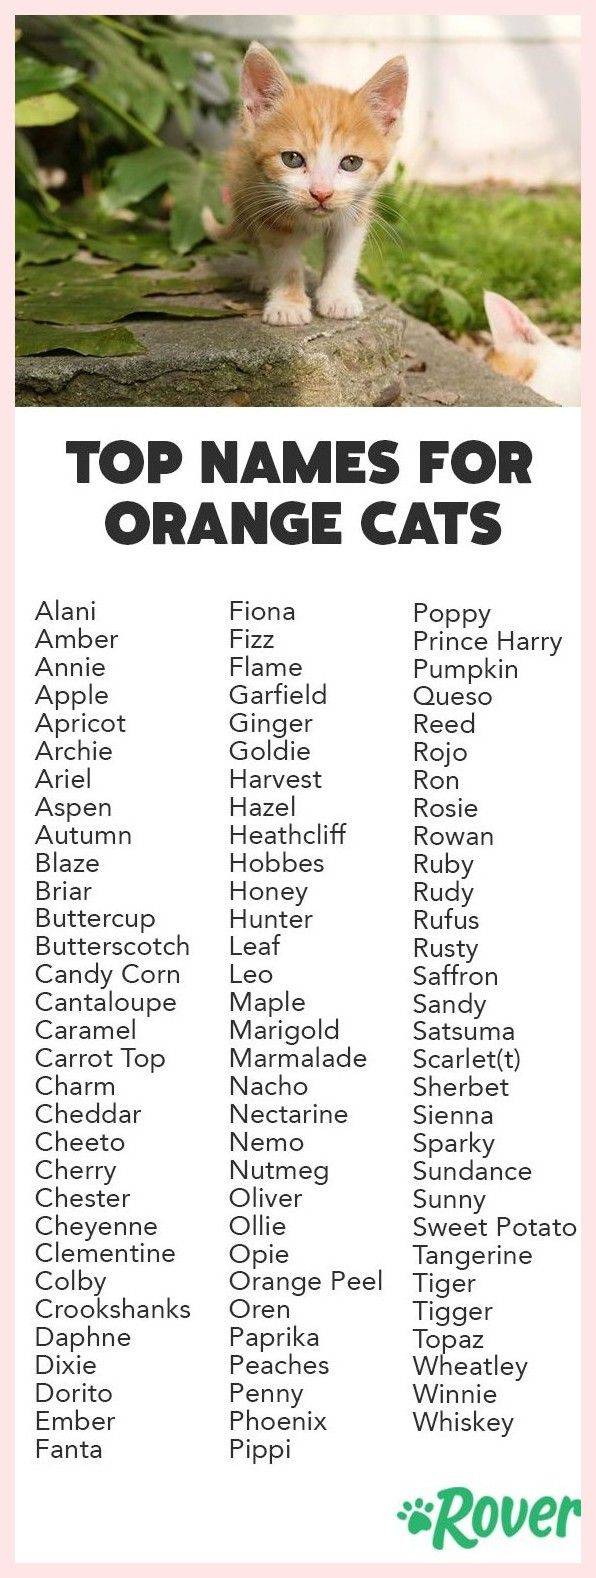 Имена для серых котов и кошек